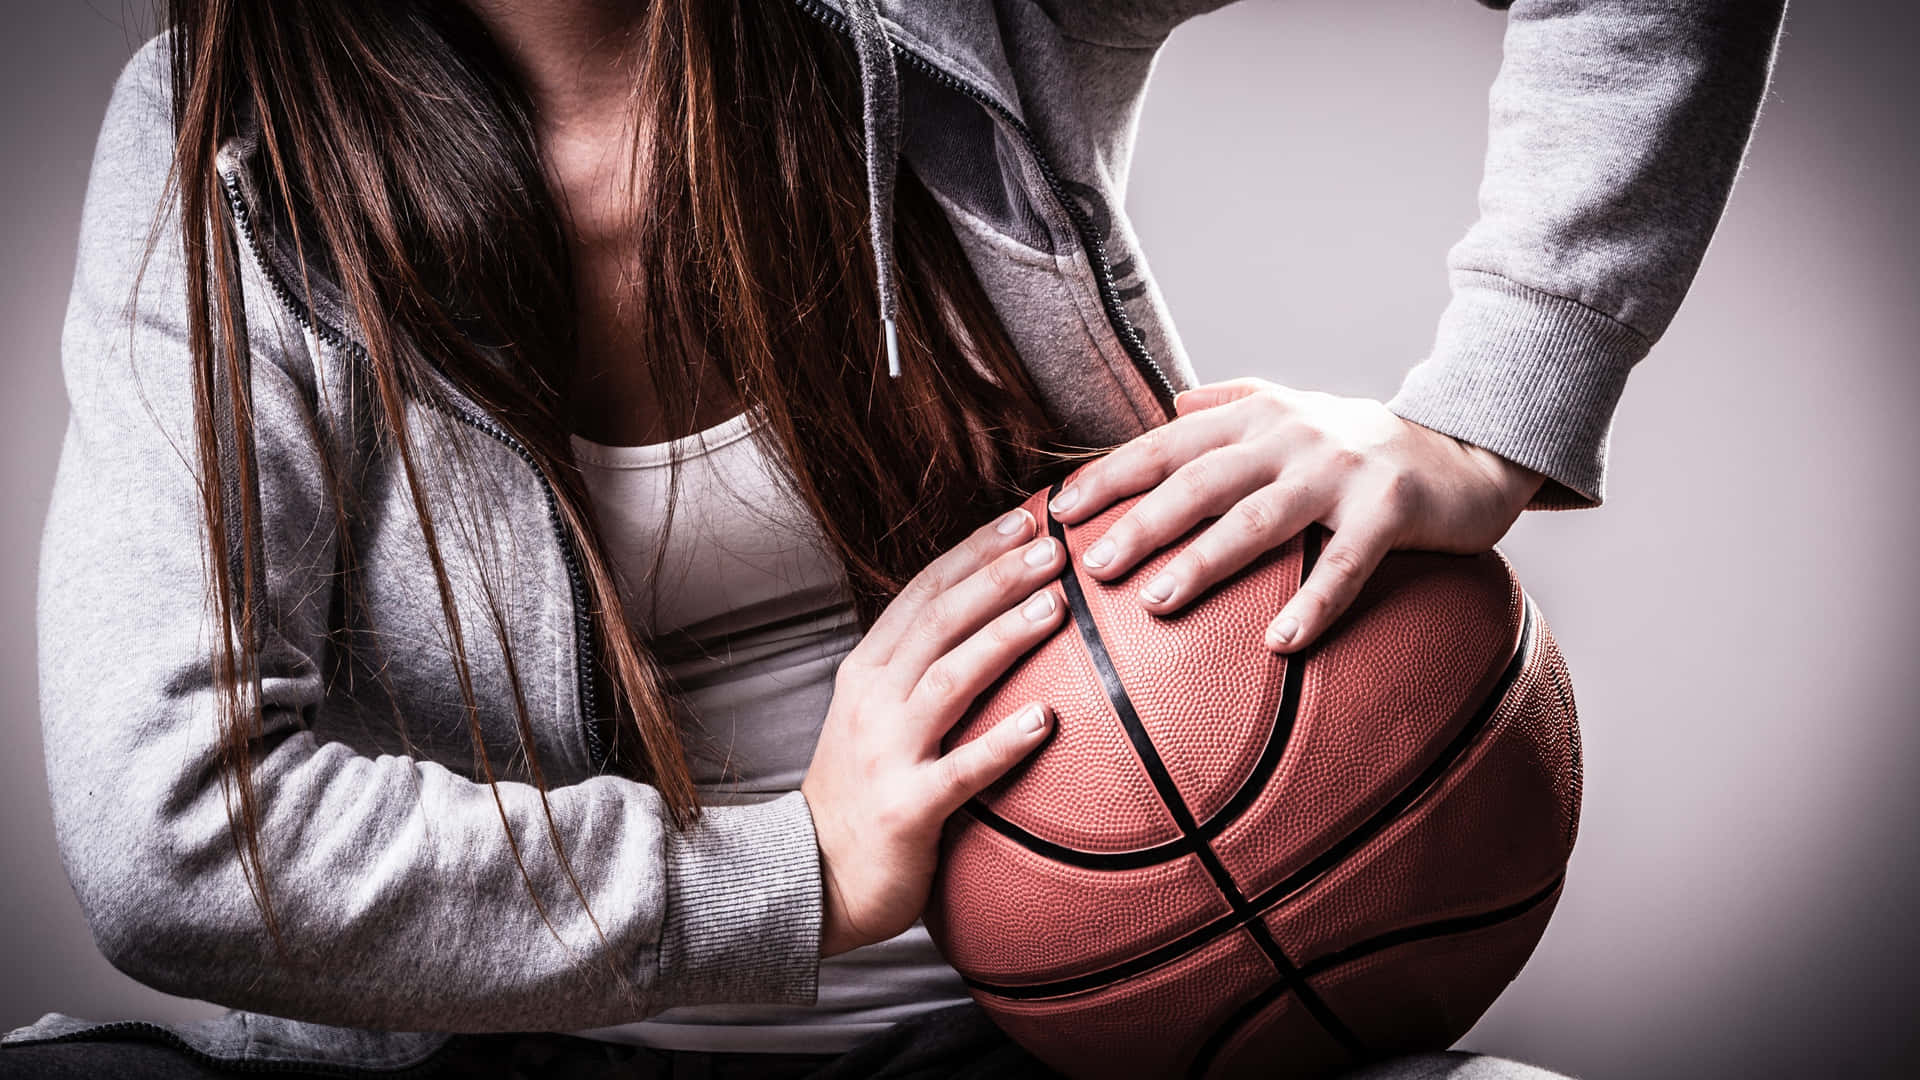 Basketball Girl Holding Ball Aesthetic Wallpaper